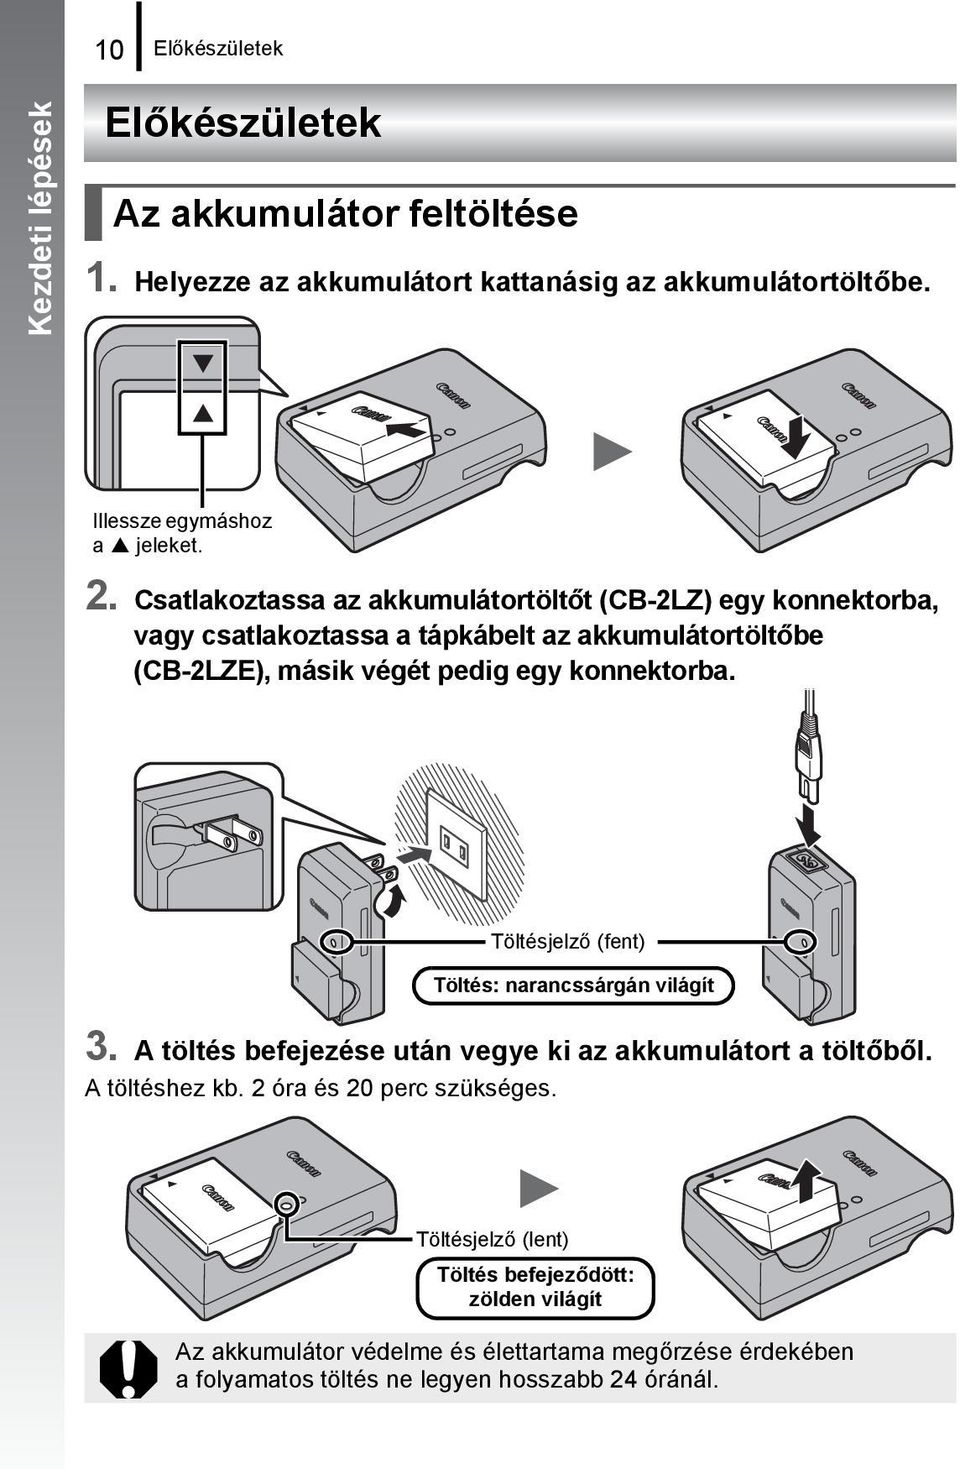 Csatlakoztassa az akkumulátortöltőt (CB-2LZ) egy konnektorba, vagy csatlakoztassa a tápkábelt az akkumulátortöltőbe (CB-2LZE), másik végét pedig egy konnektorba.